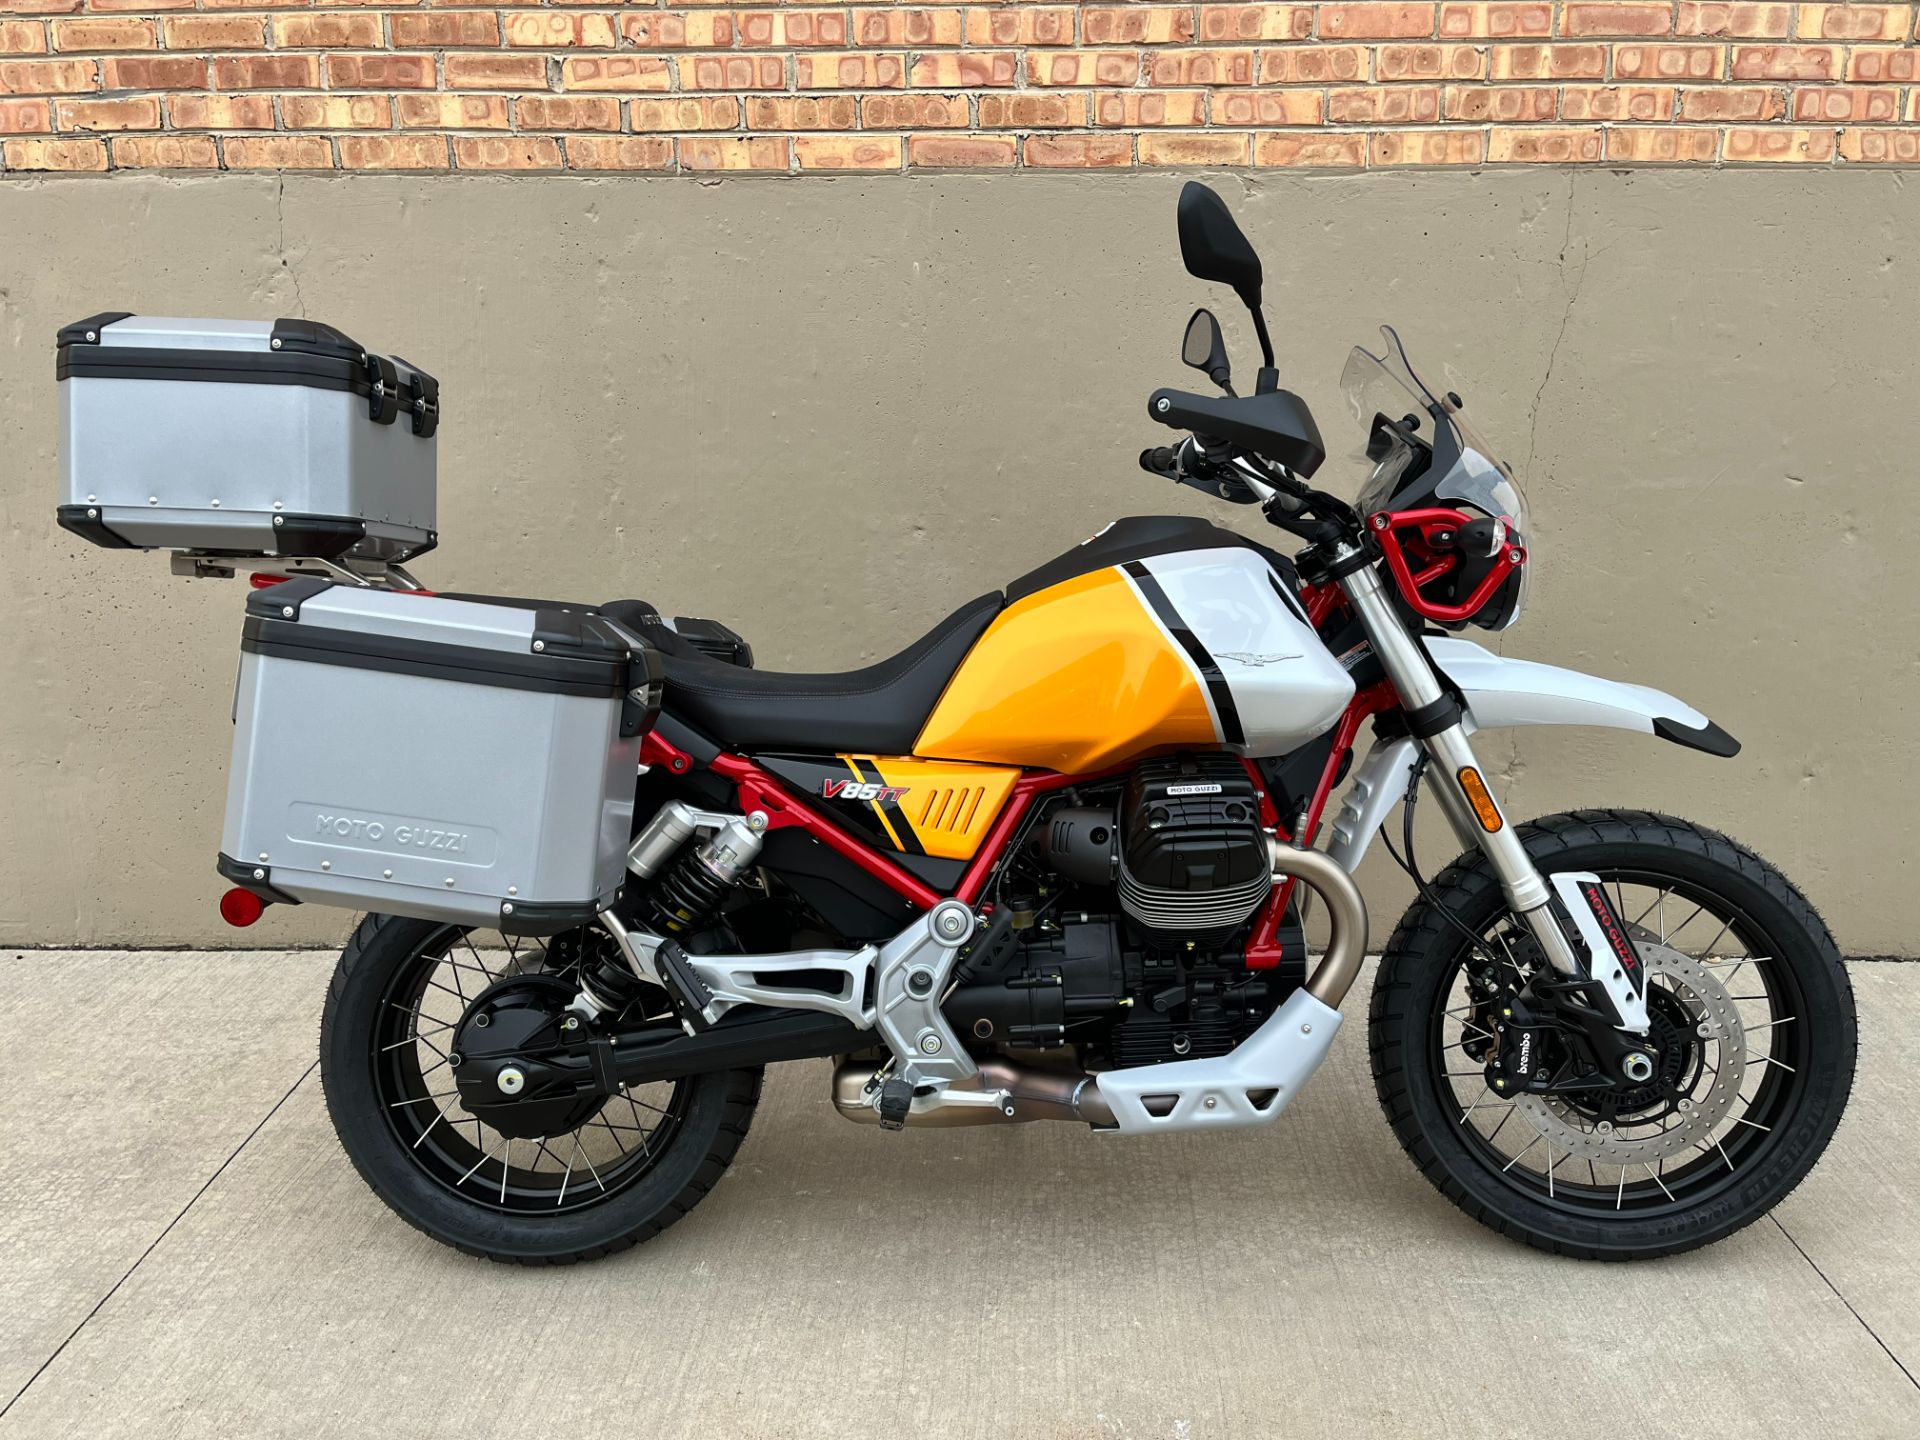 2022 Moto Guzzi V85 TT Adventure in Roselle, Illinois - Photo 1